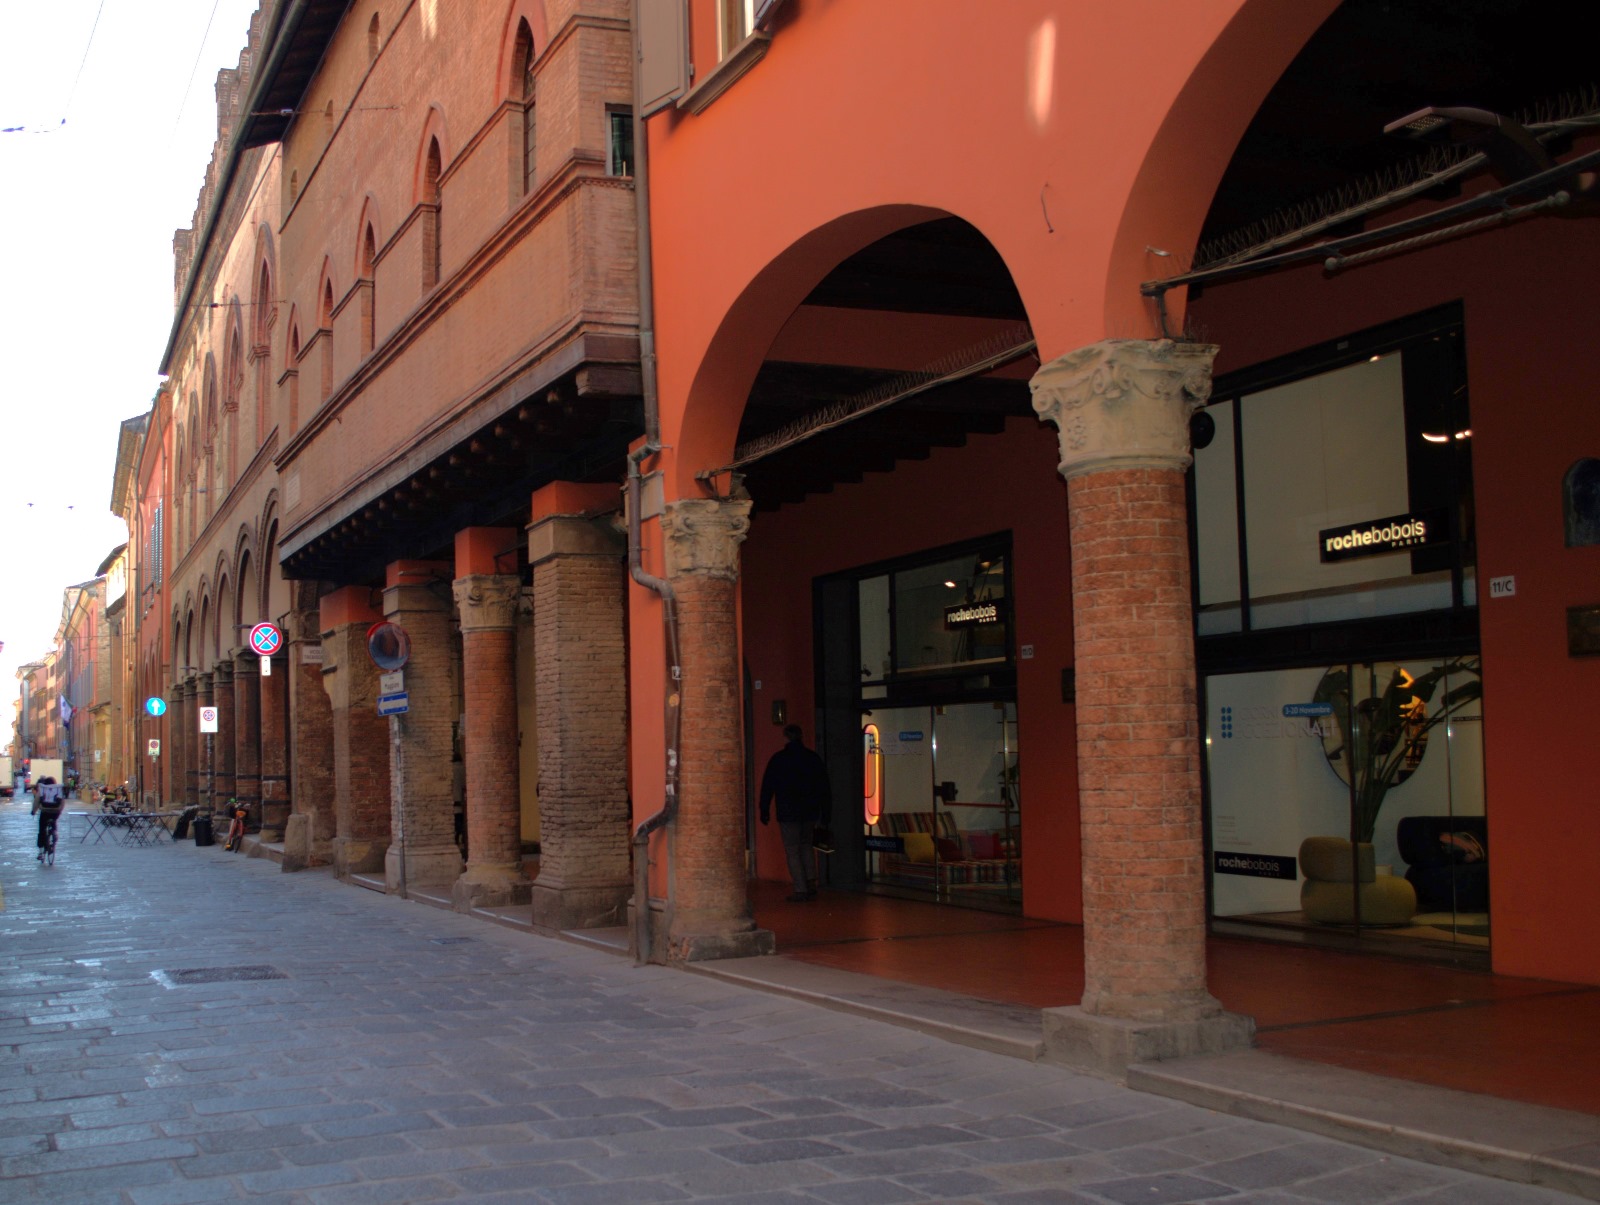 Explorez les ruelles pavées, où chaque habitation raconte une histoire séculaire, faisant de Bologne un véritable musée à ciel ouvert.